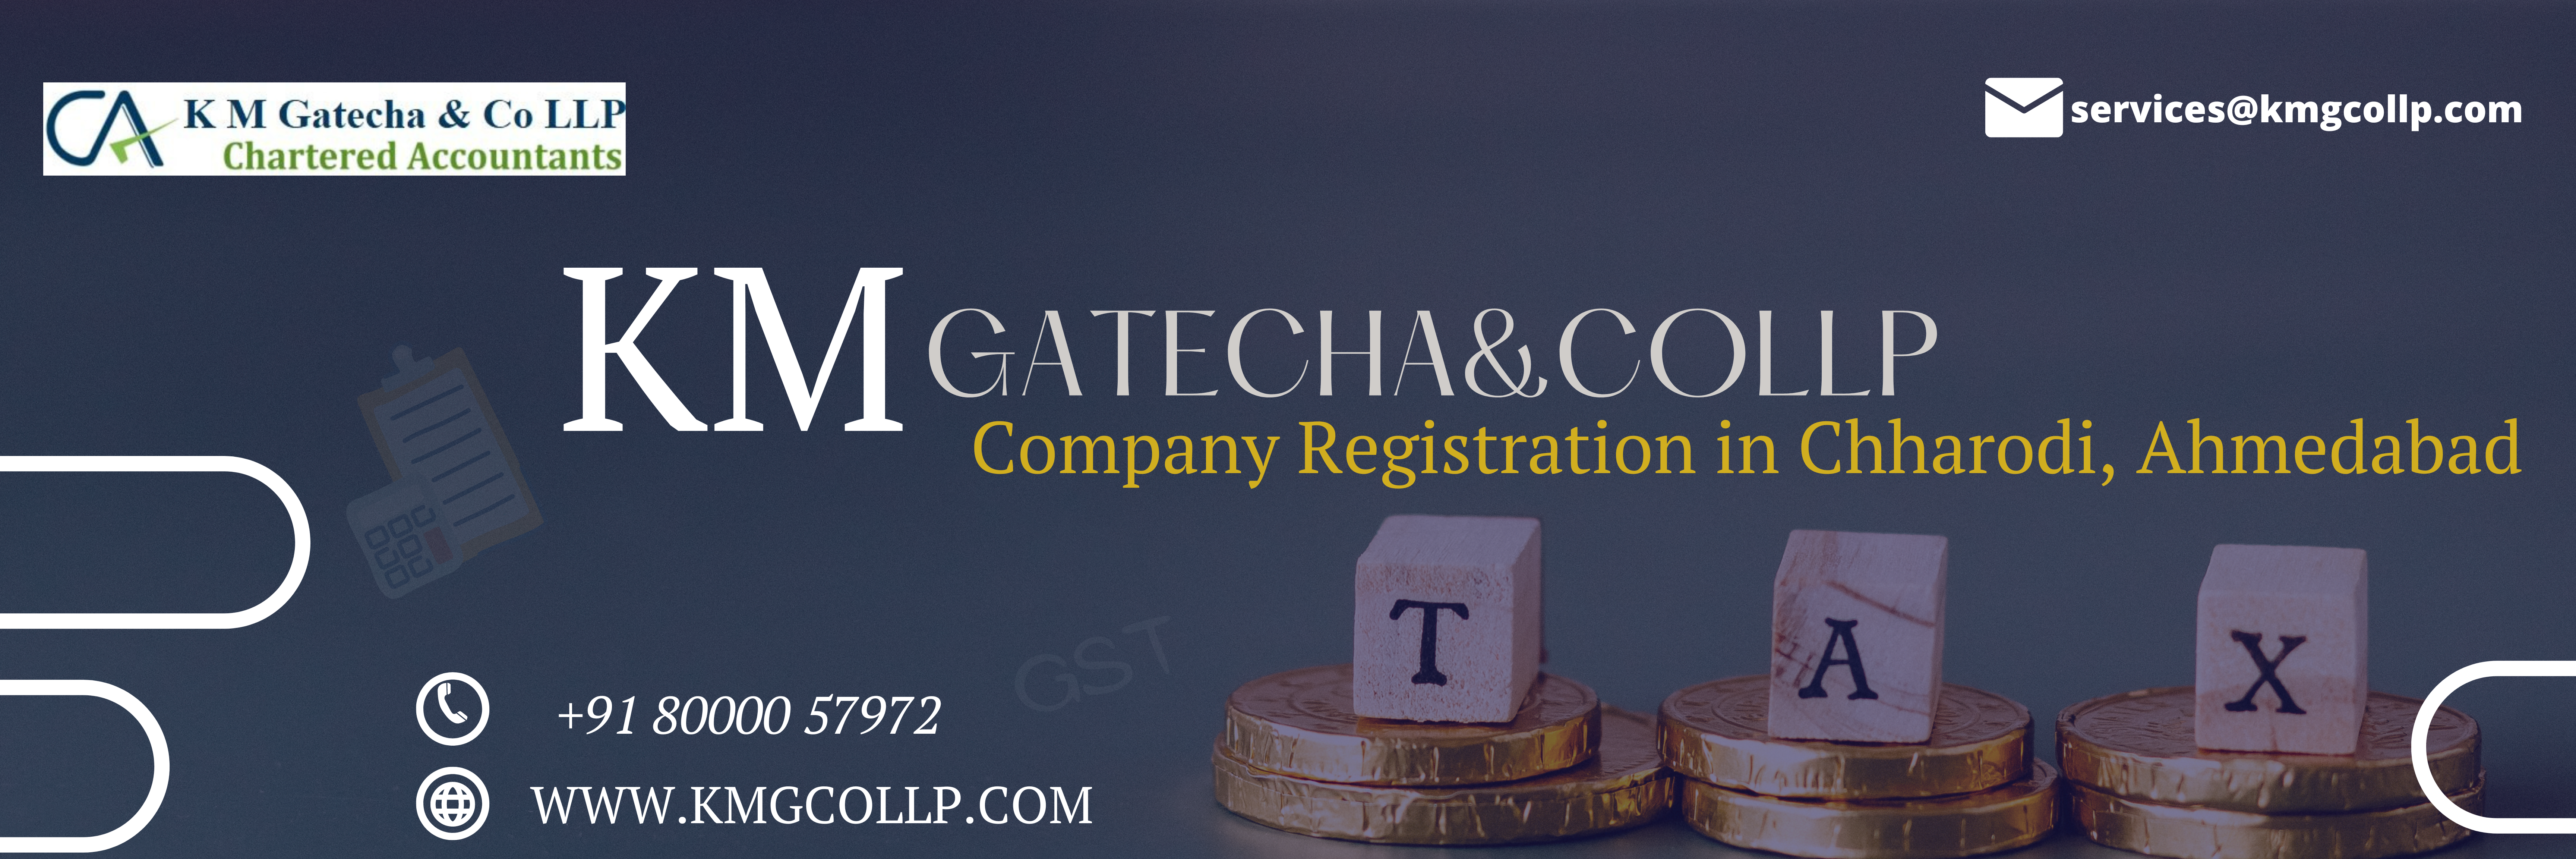 Company Registration in Chharodi